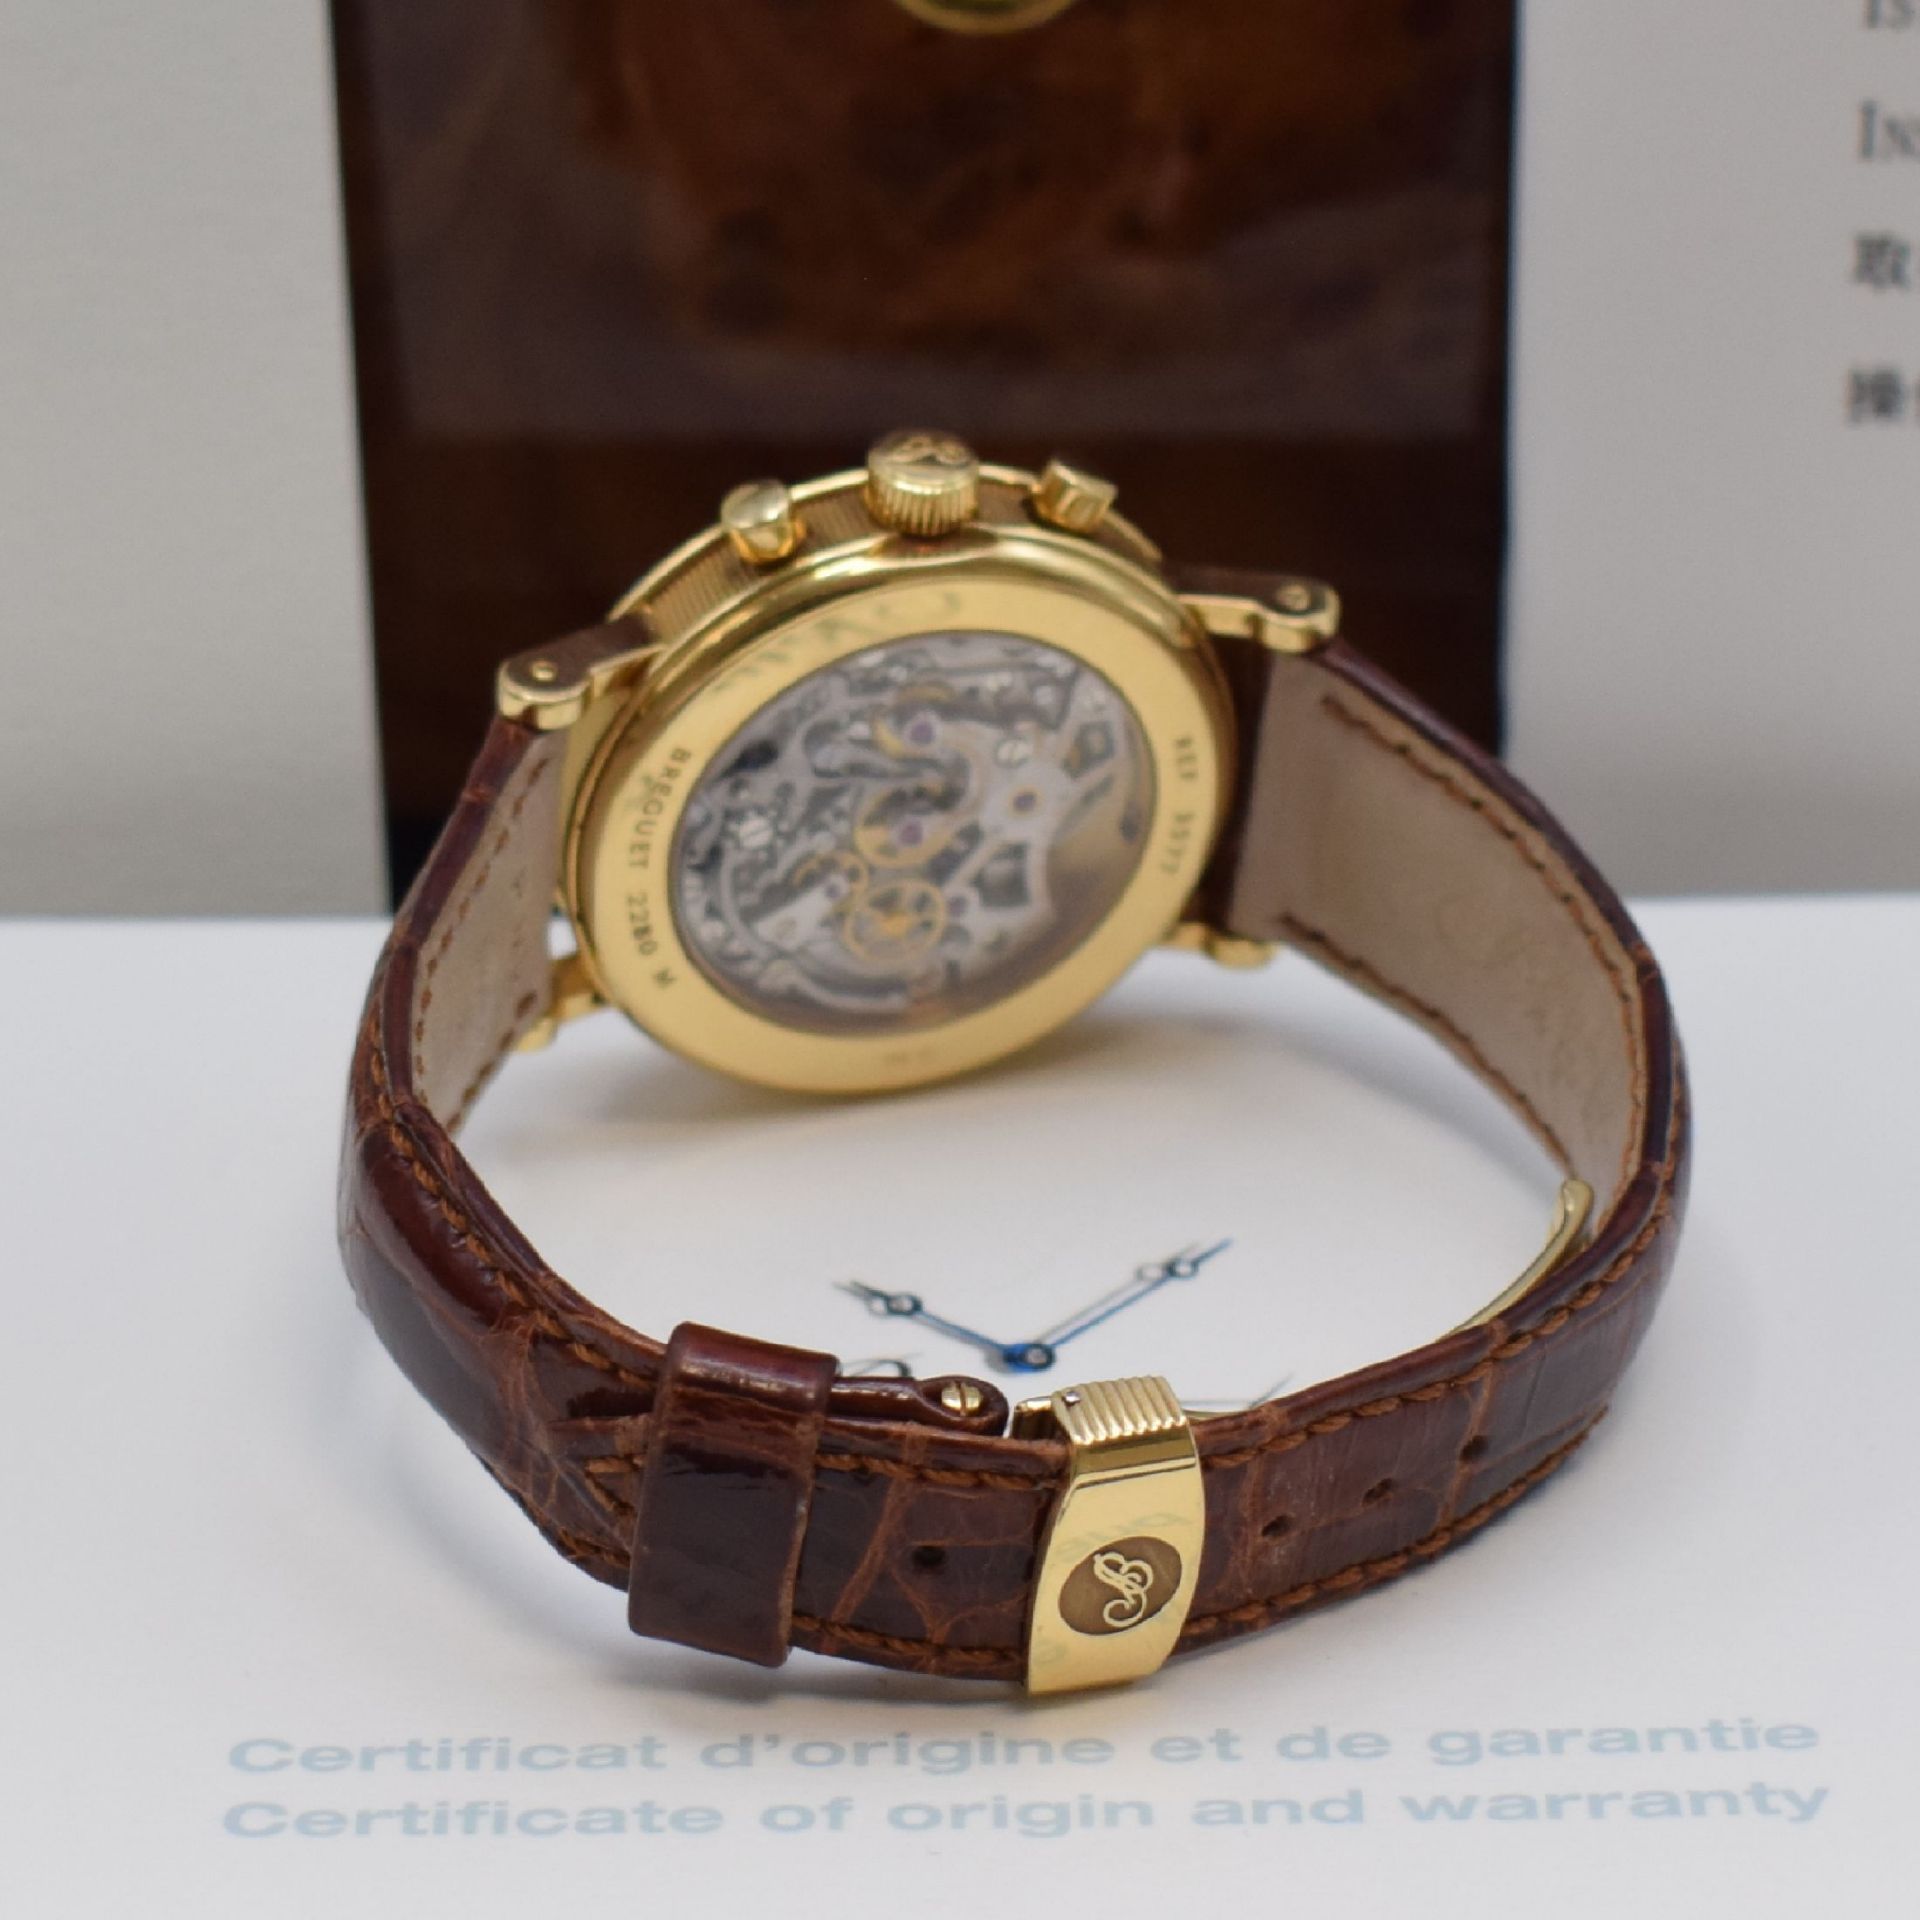 BREGUET Armbandtourbillon mit Chronograph in GG 750/000 - Image 3 of 7